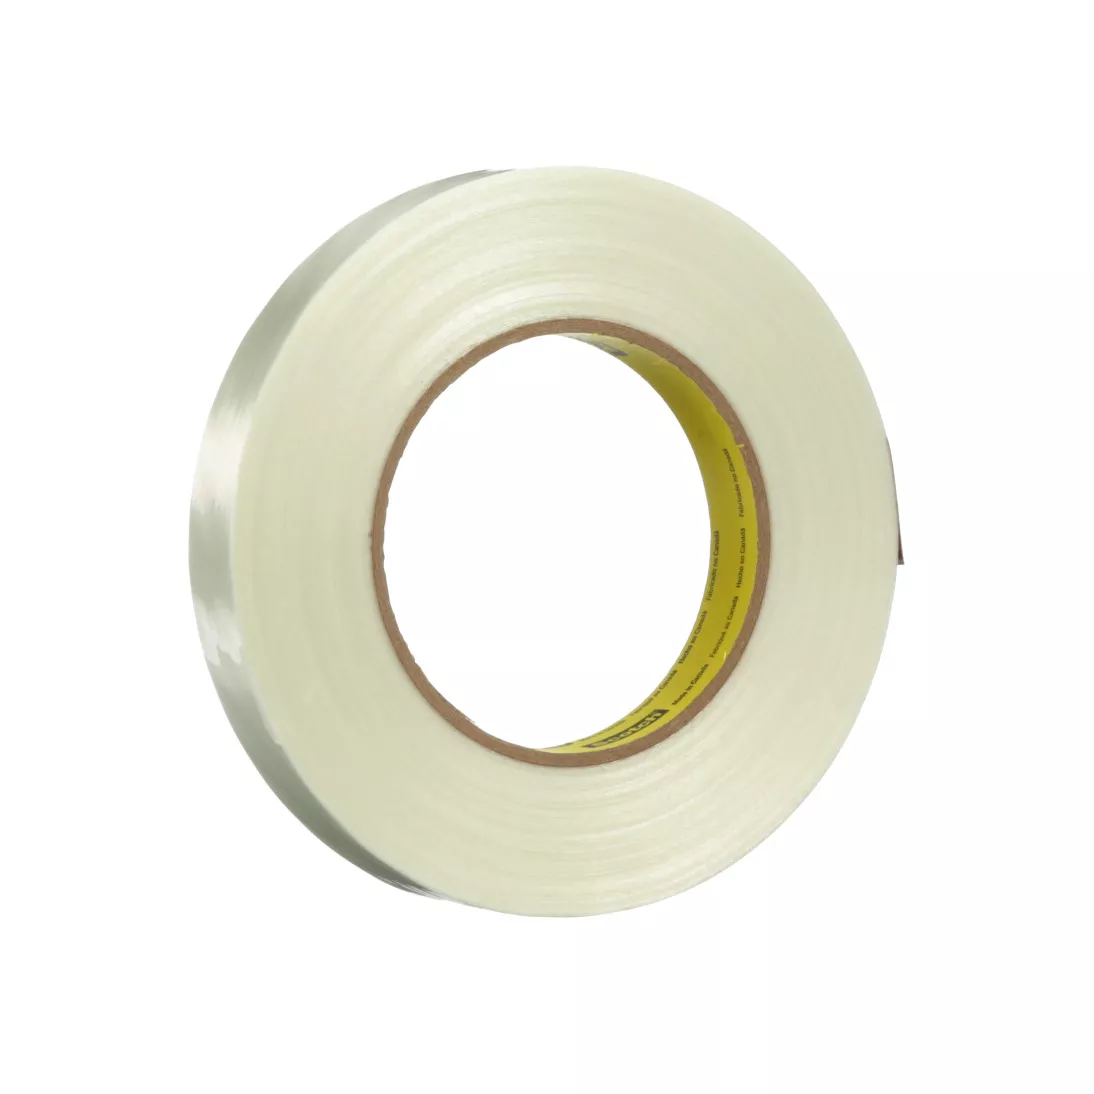 Scotch® Filament Tape 8988, Clear, 18 mm x 55 m, 6.9 mil, 48 rolls per
case